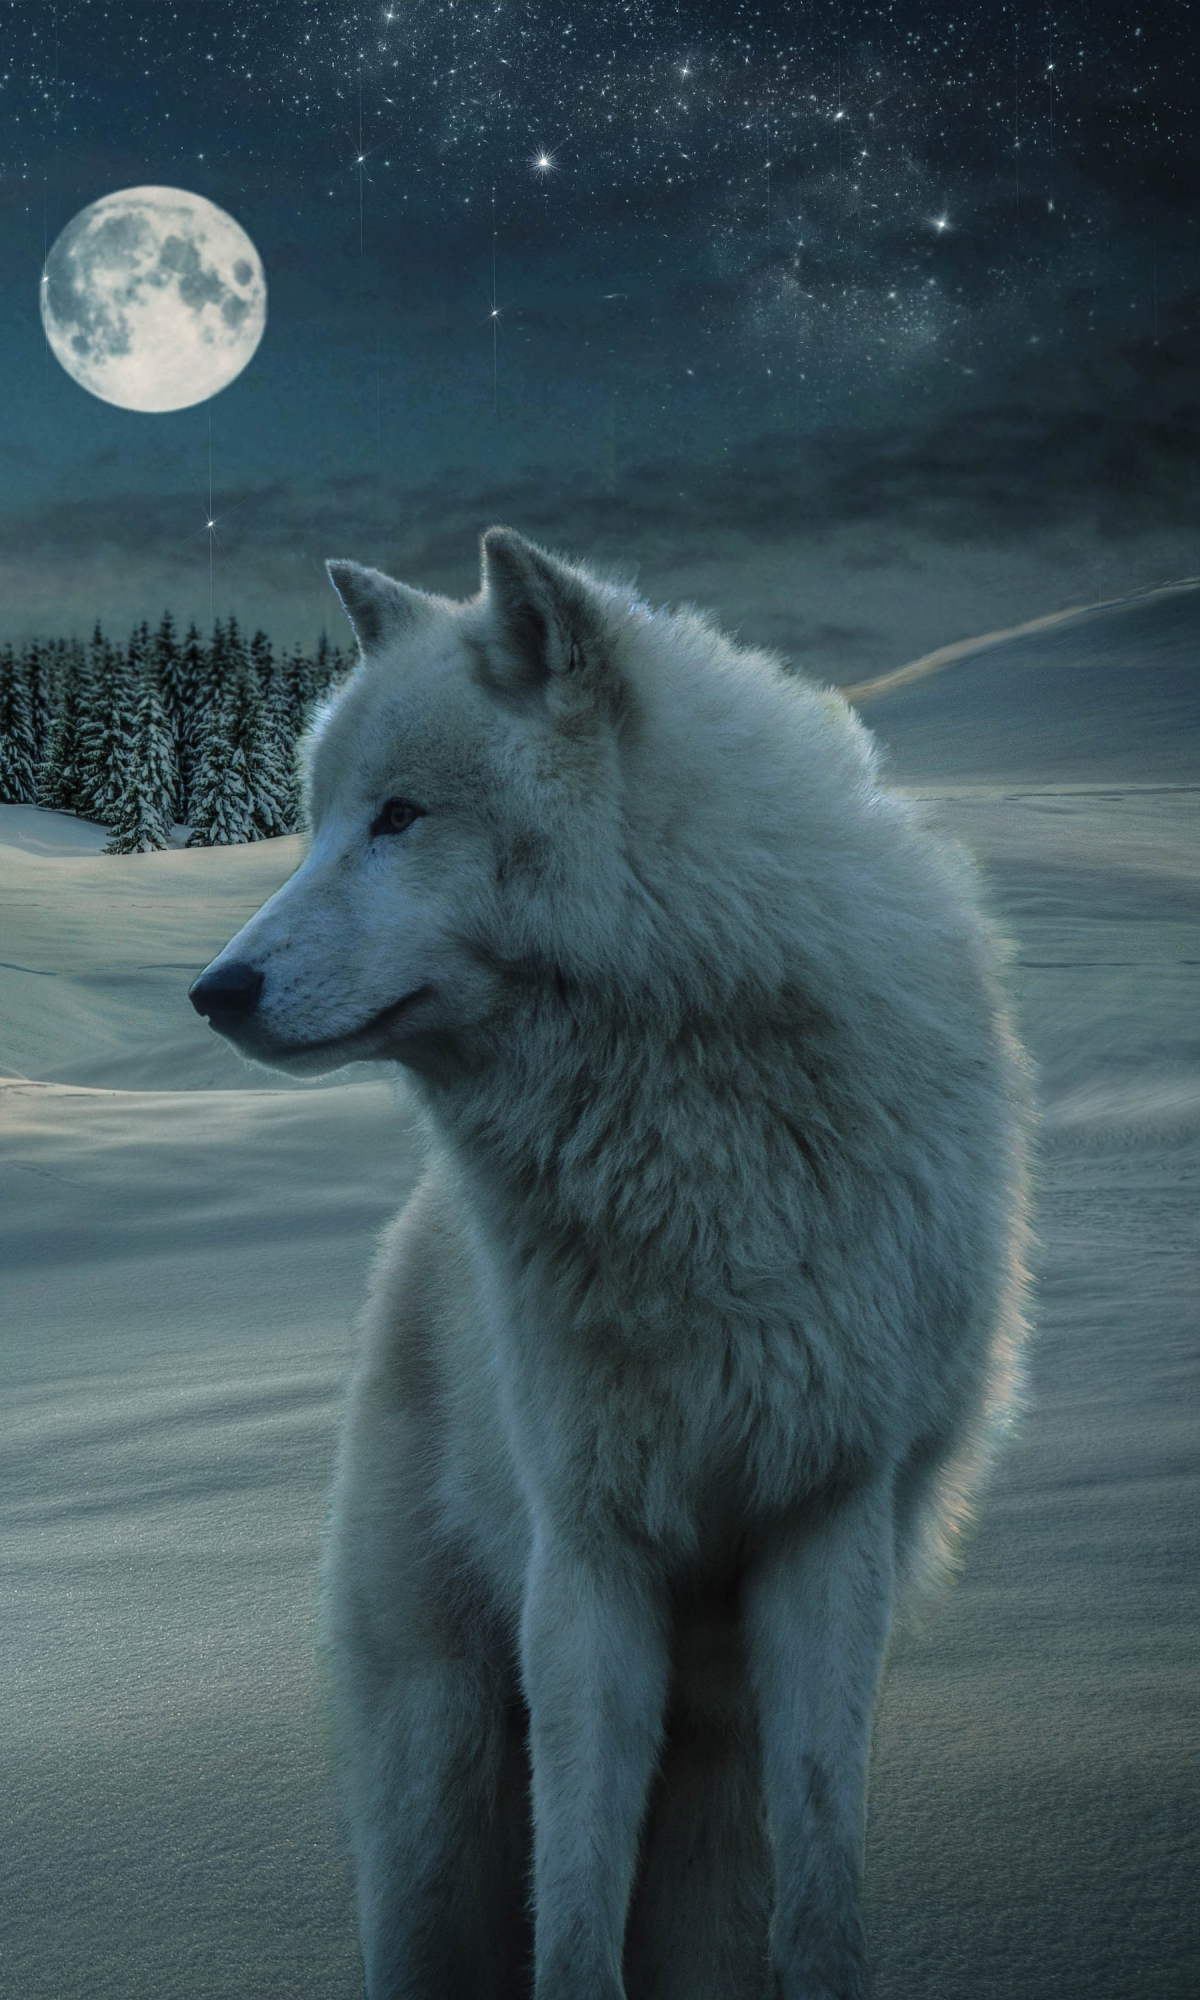 Descarga gratuita de fondo de pantalla para móvil de Animales, Invierno, Noche, Luna, Nieve, Lobo, Lobo Blanco, Wolves.